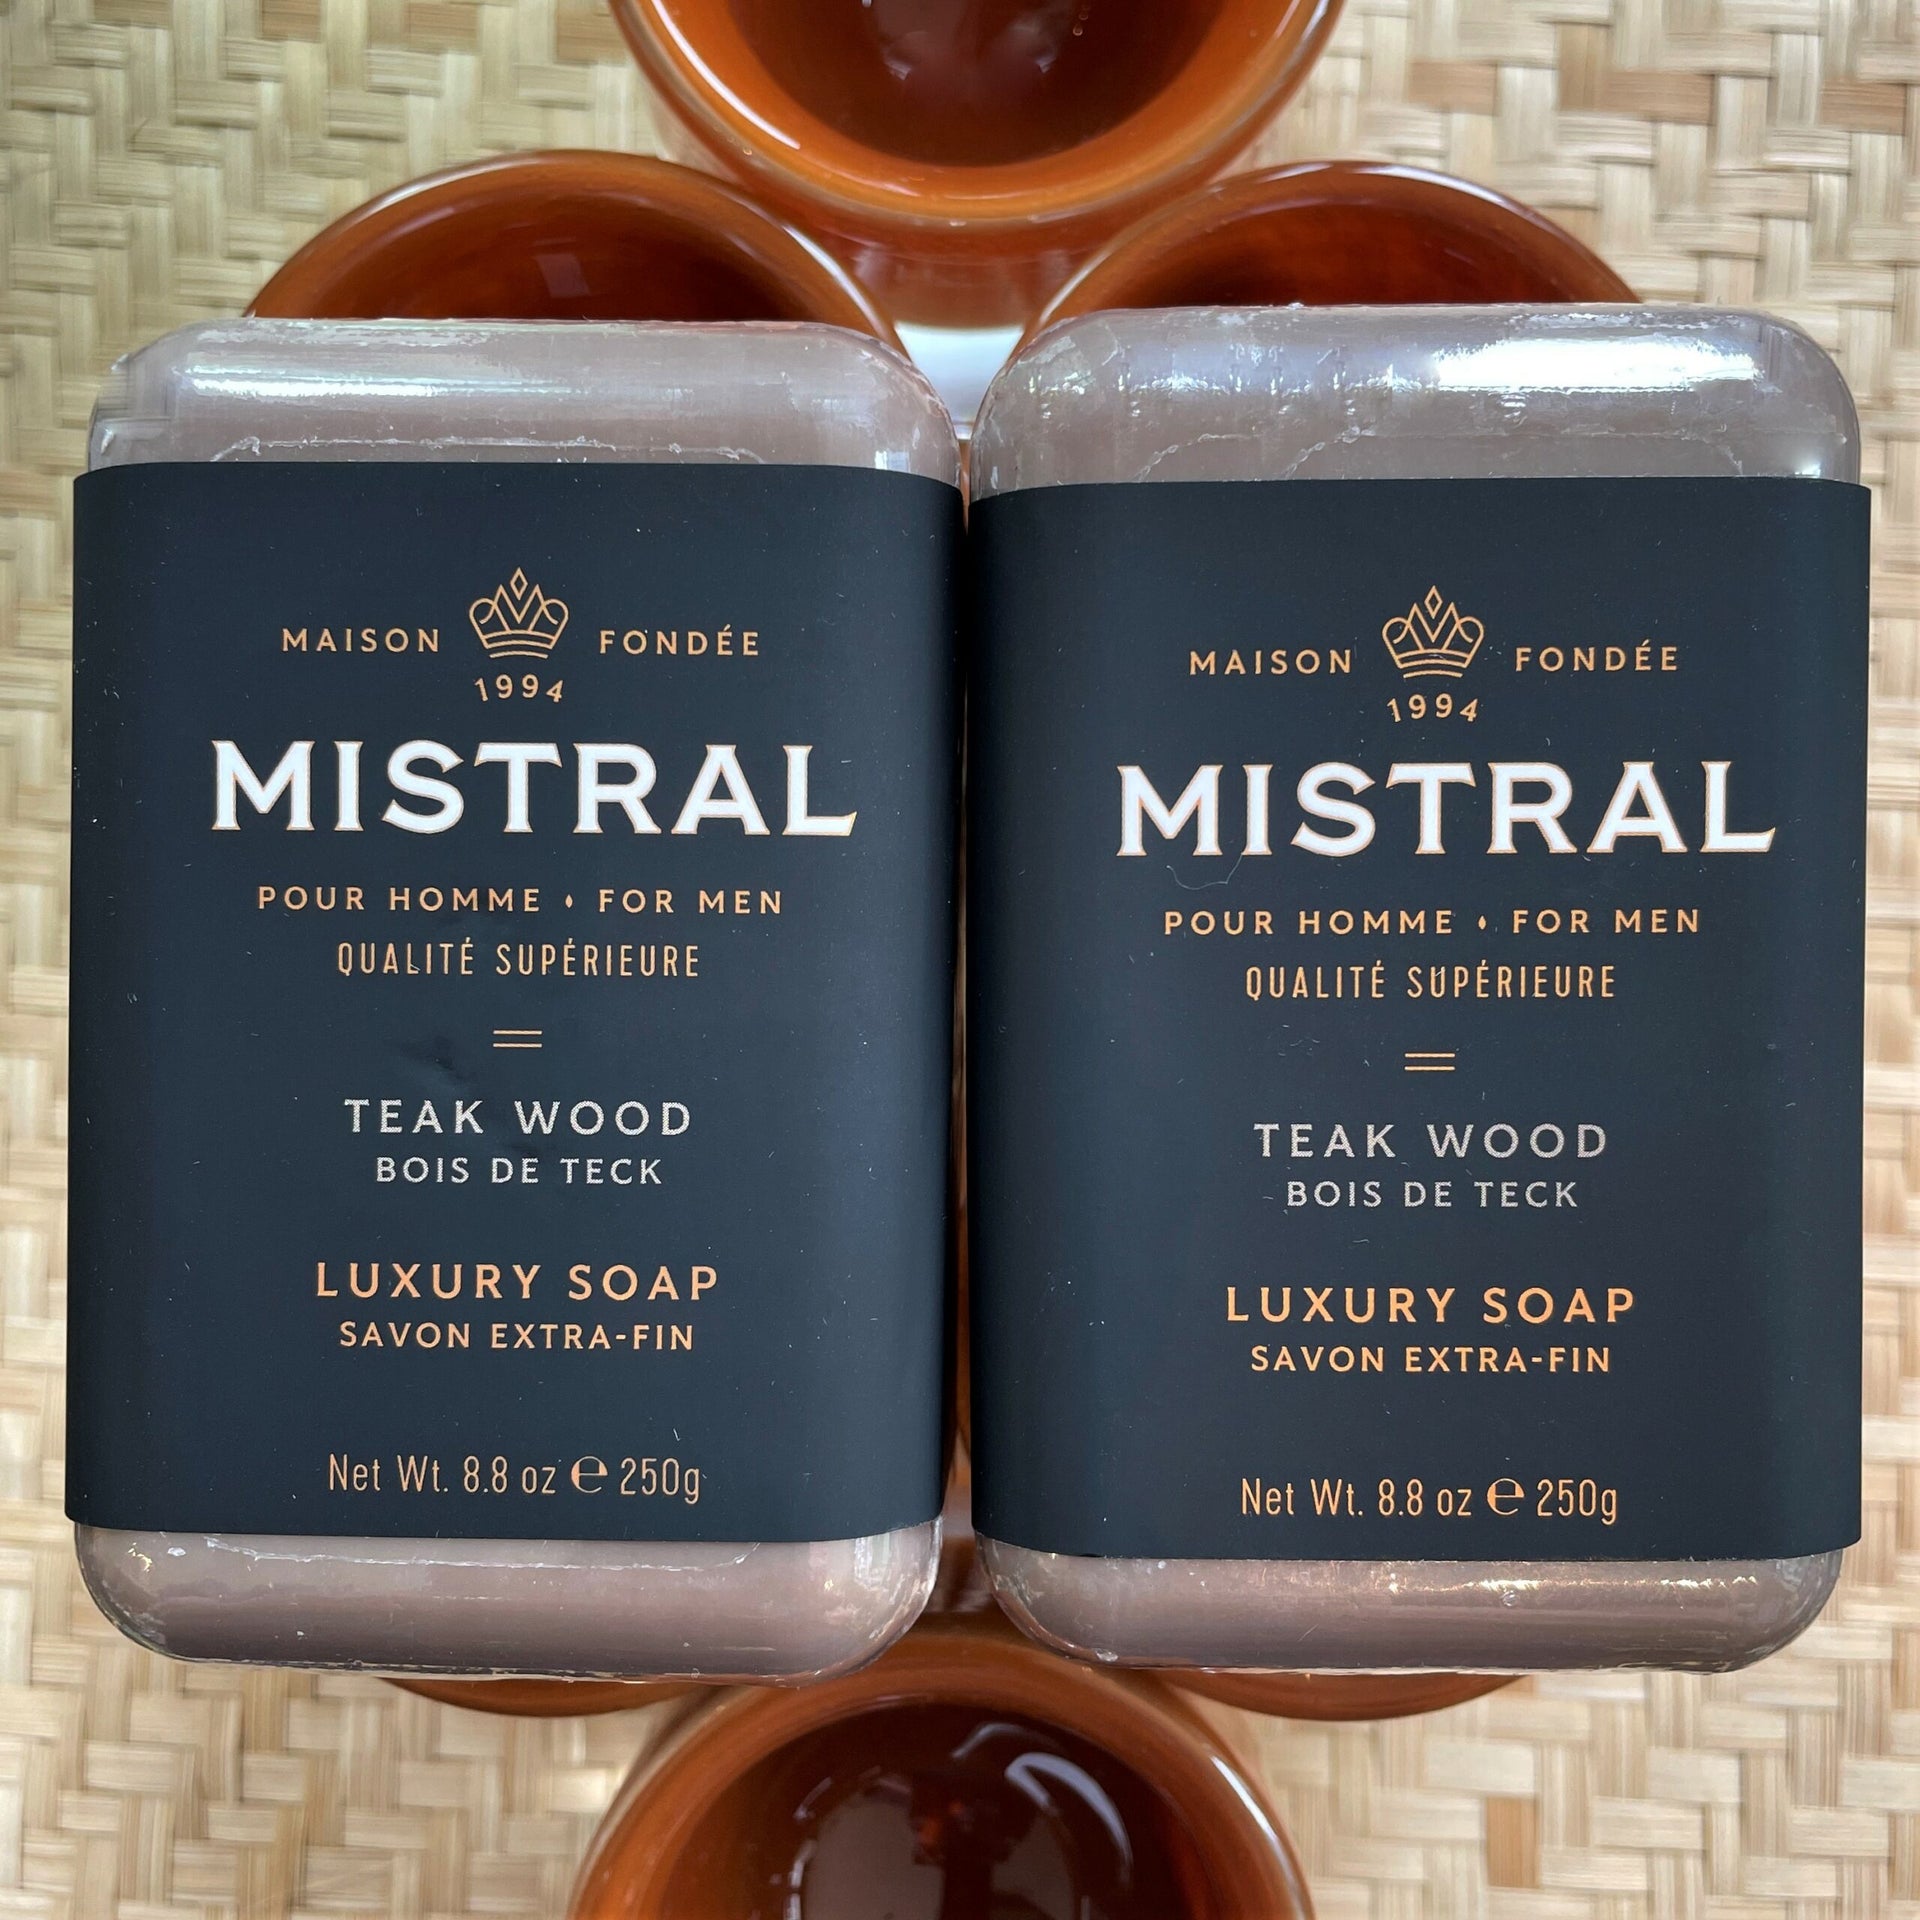  Mistral Men's Natural Hand Soap, Cedarwood Marine